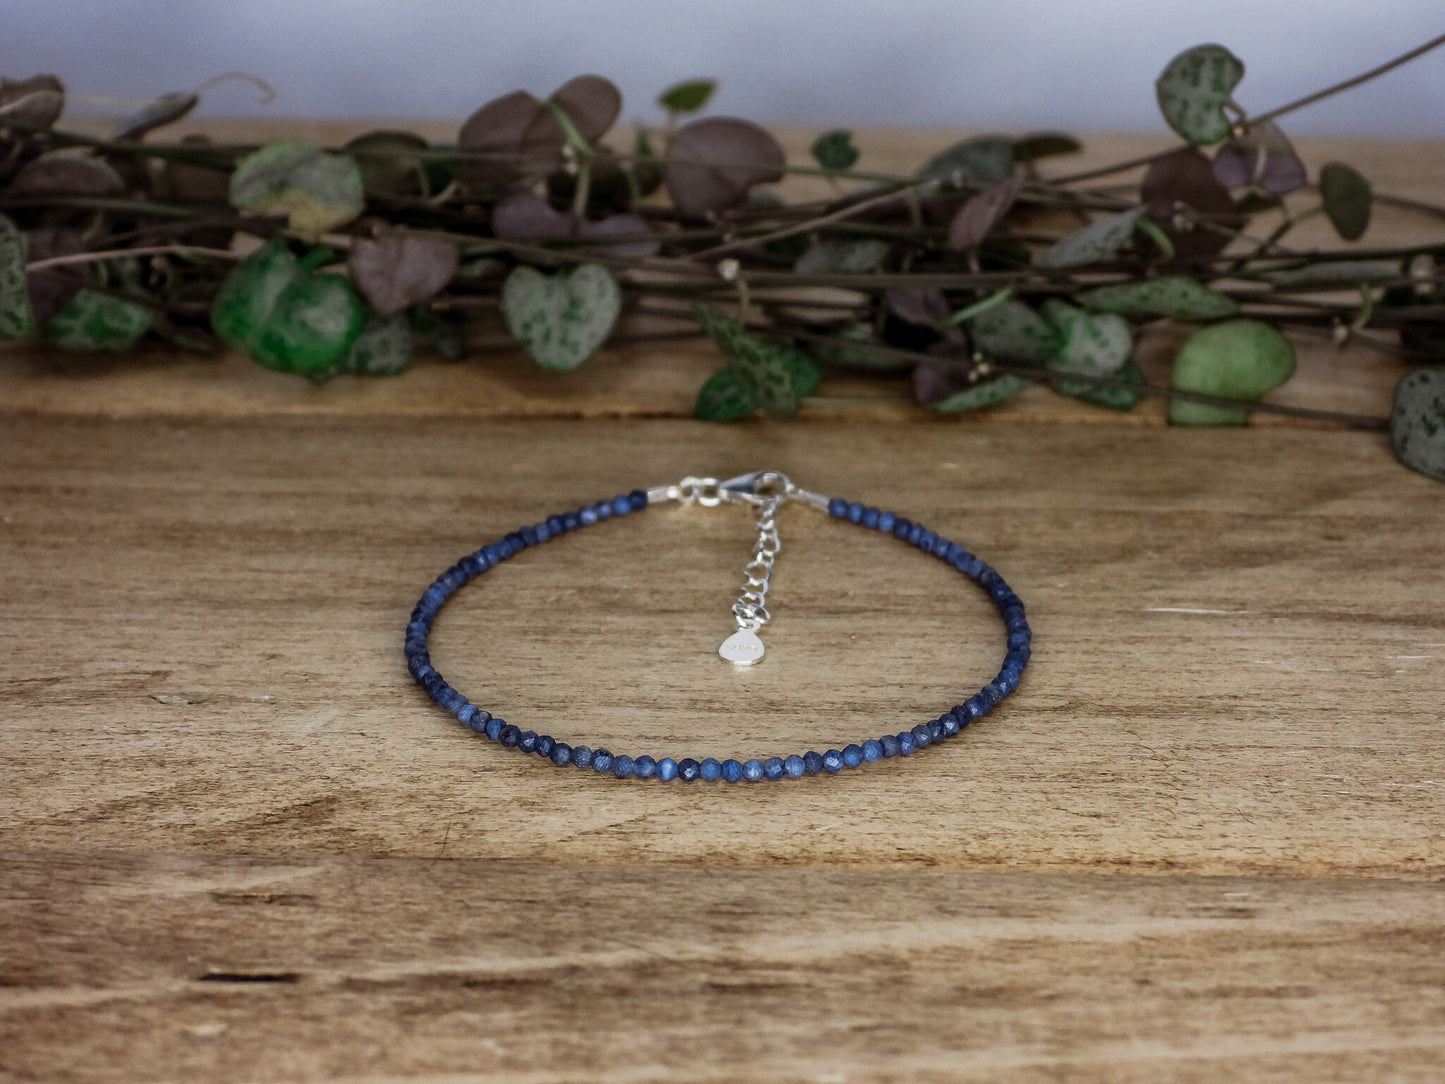 Dainty Blue Coral "Harmony & Growth" Gemstone Bracelet